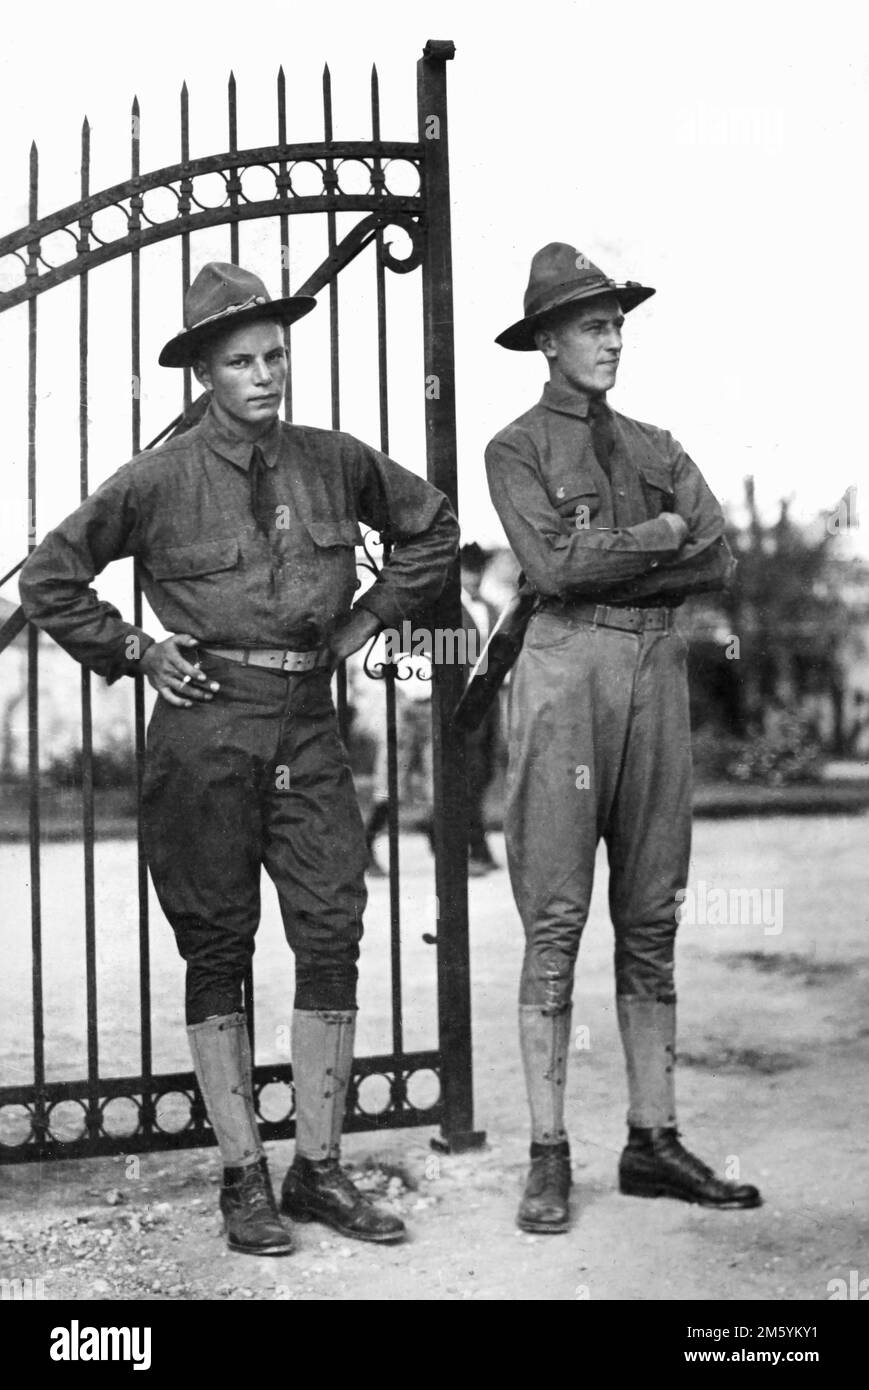 Deux soldats américains se tiennent près d'une porte au camp d'entraînement du Texas, vers 1917. Banque D'Images